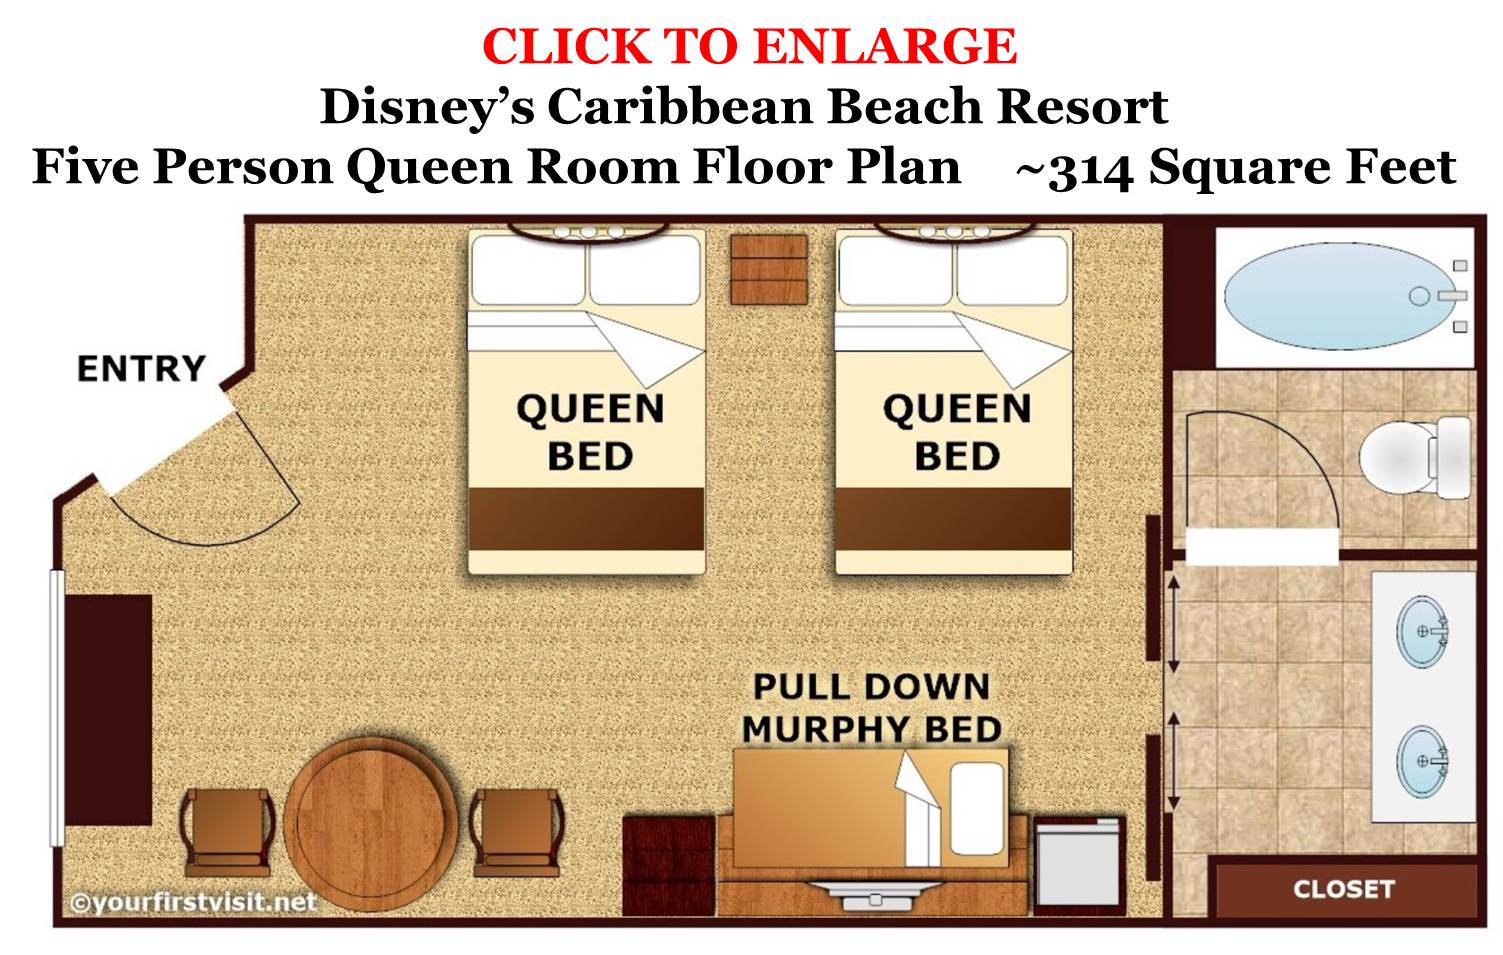 Five-Person-Queen-Room-Floor-Plan-Disneys-Caribbean-Beach-Resort-from-yourfirstvisit.net_.jpg